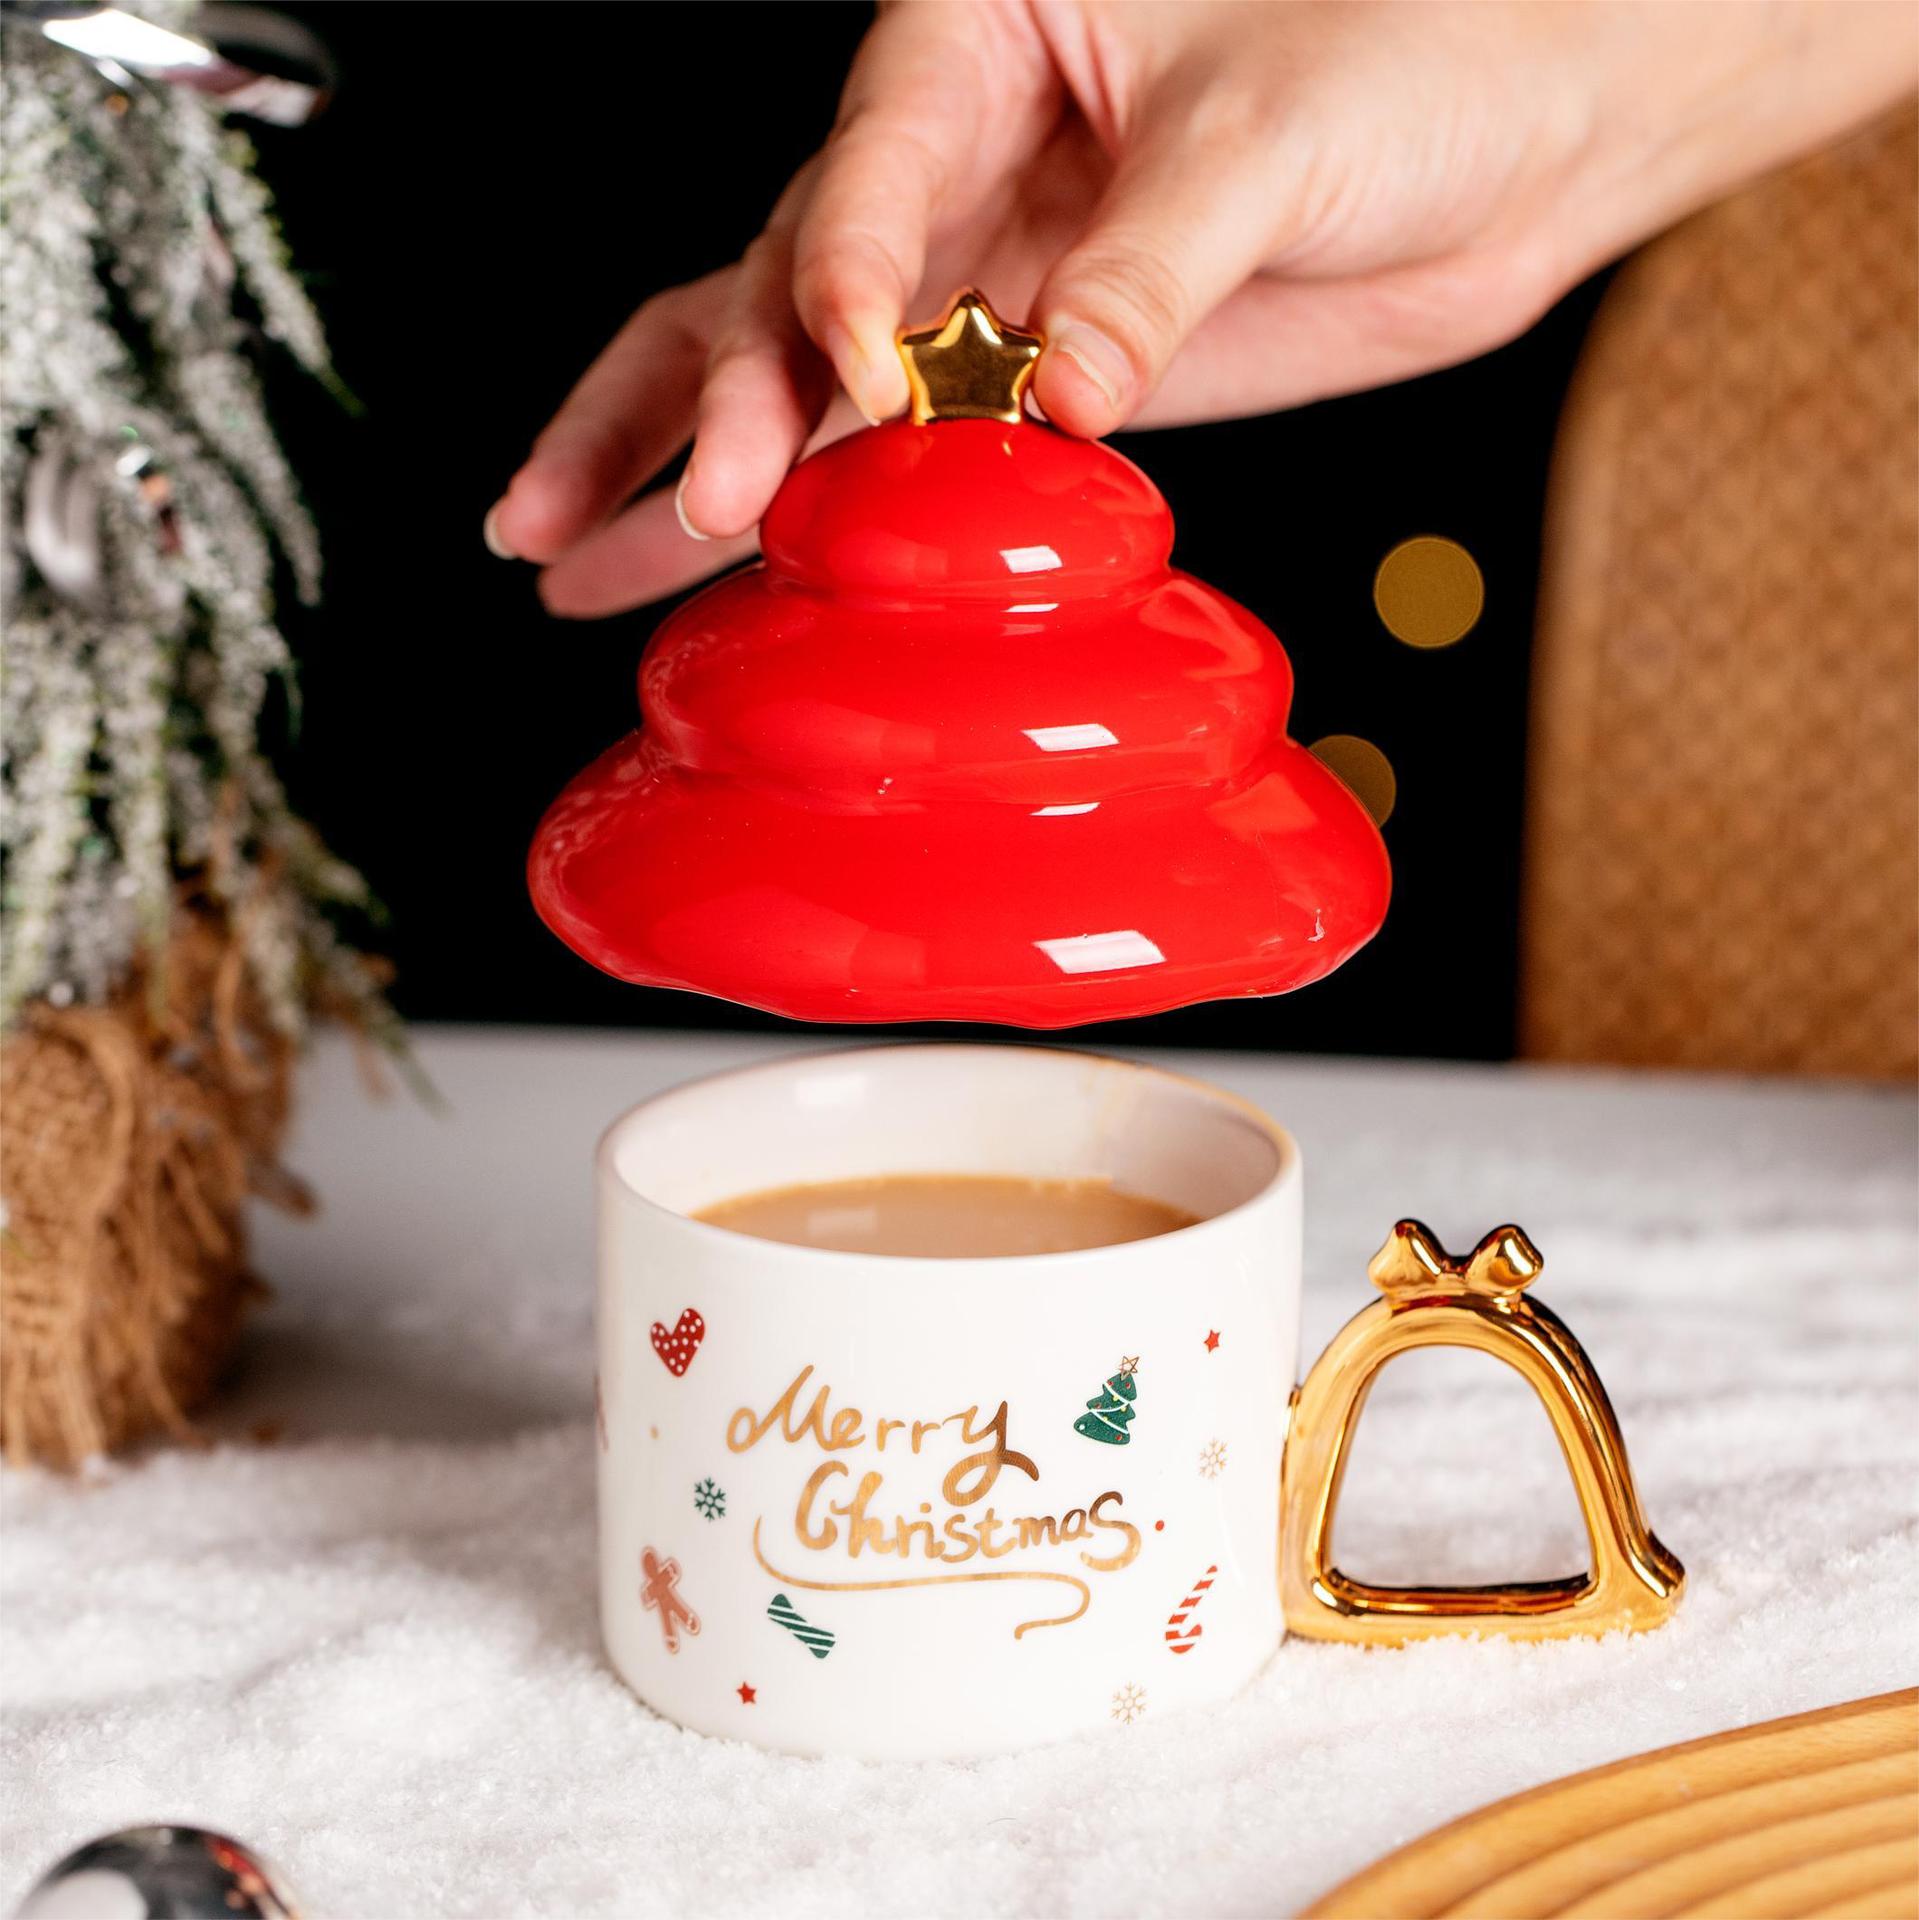 christmas coffee cups, Christmas Cups, gingerbread mugs, Christmas Tea Cups, Xmas Mug, Ceramic Mug. Ceramic Cups, Christmas Ceramic Mugs and Cups